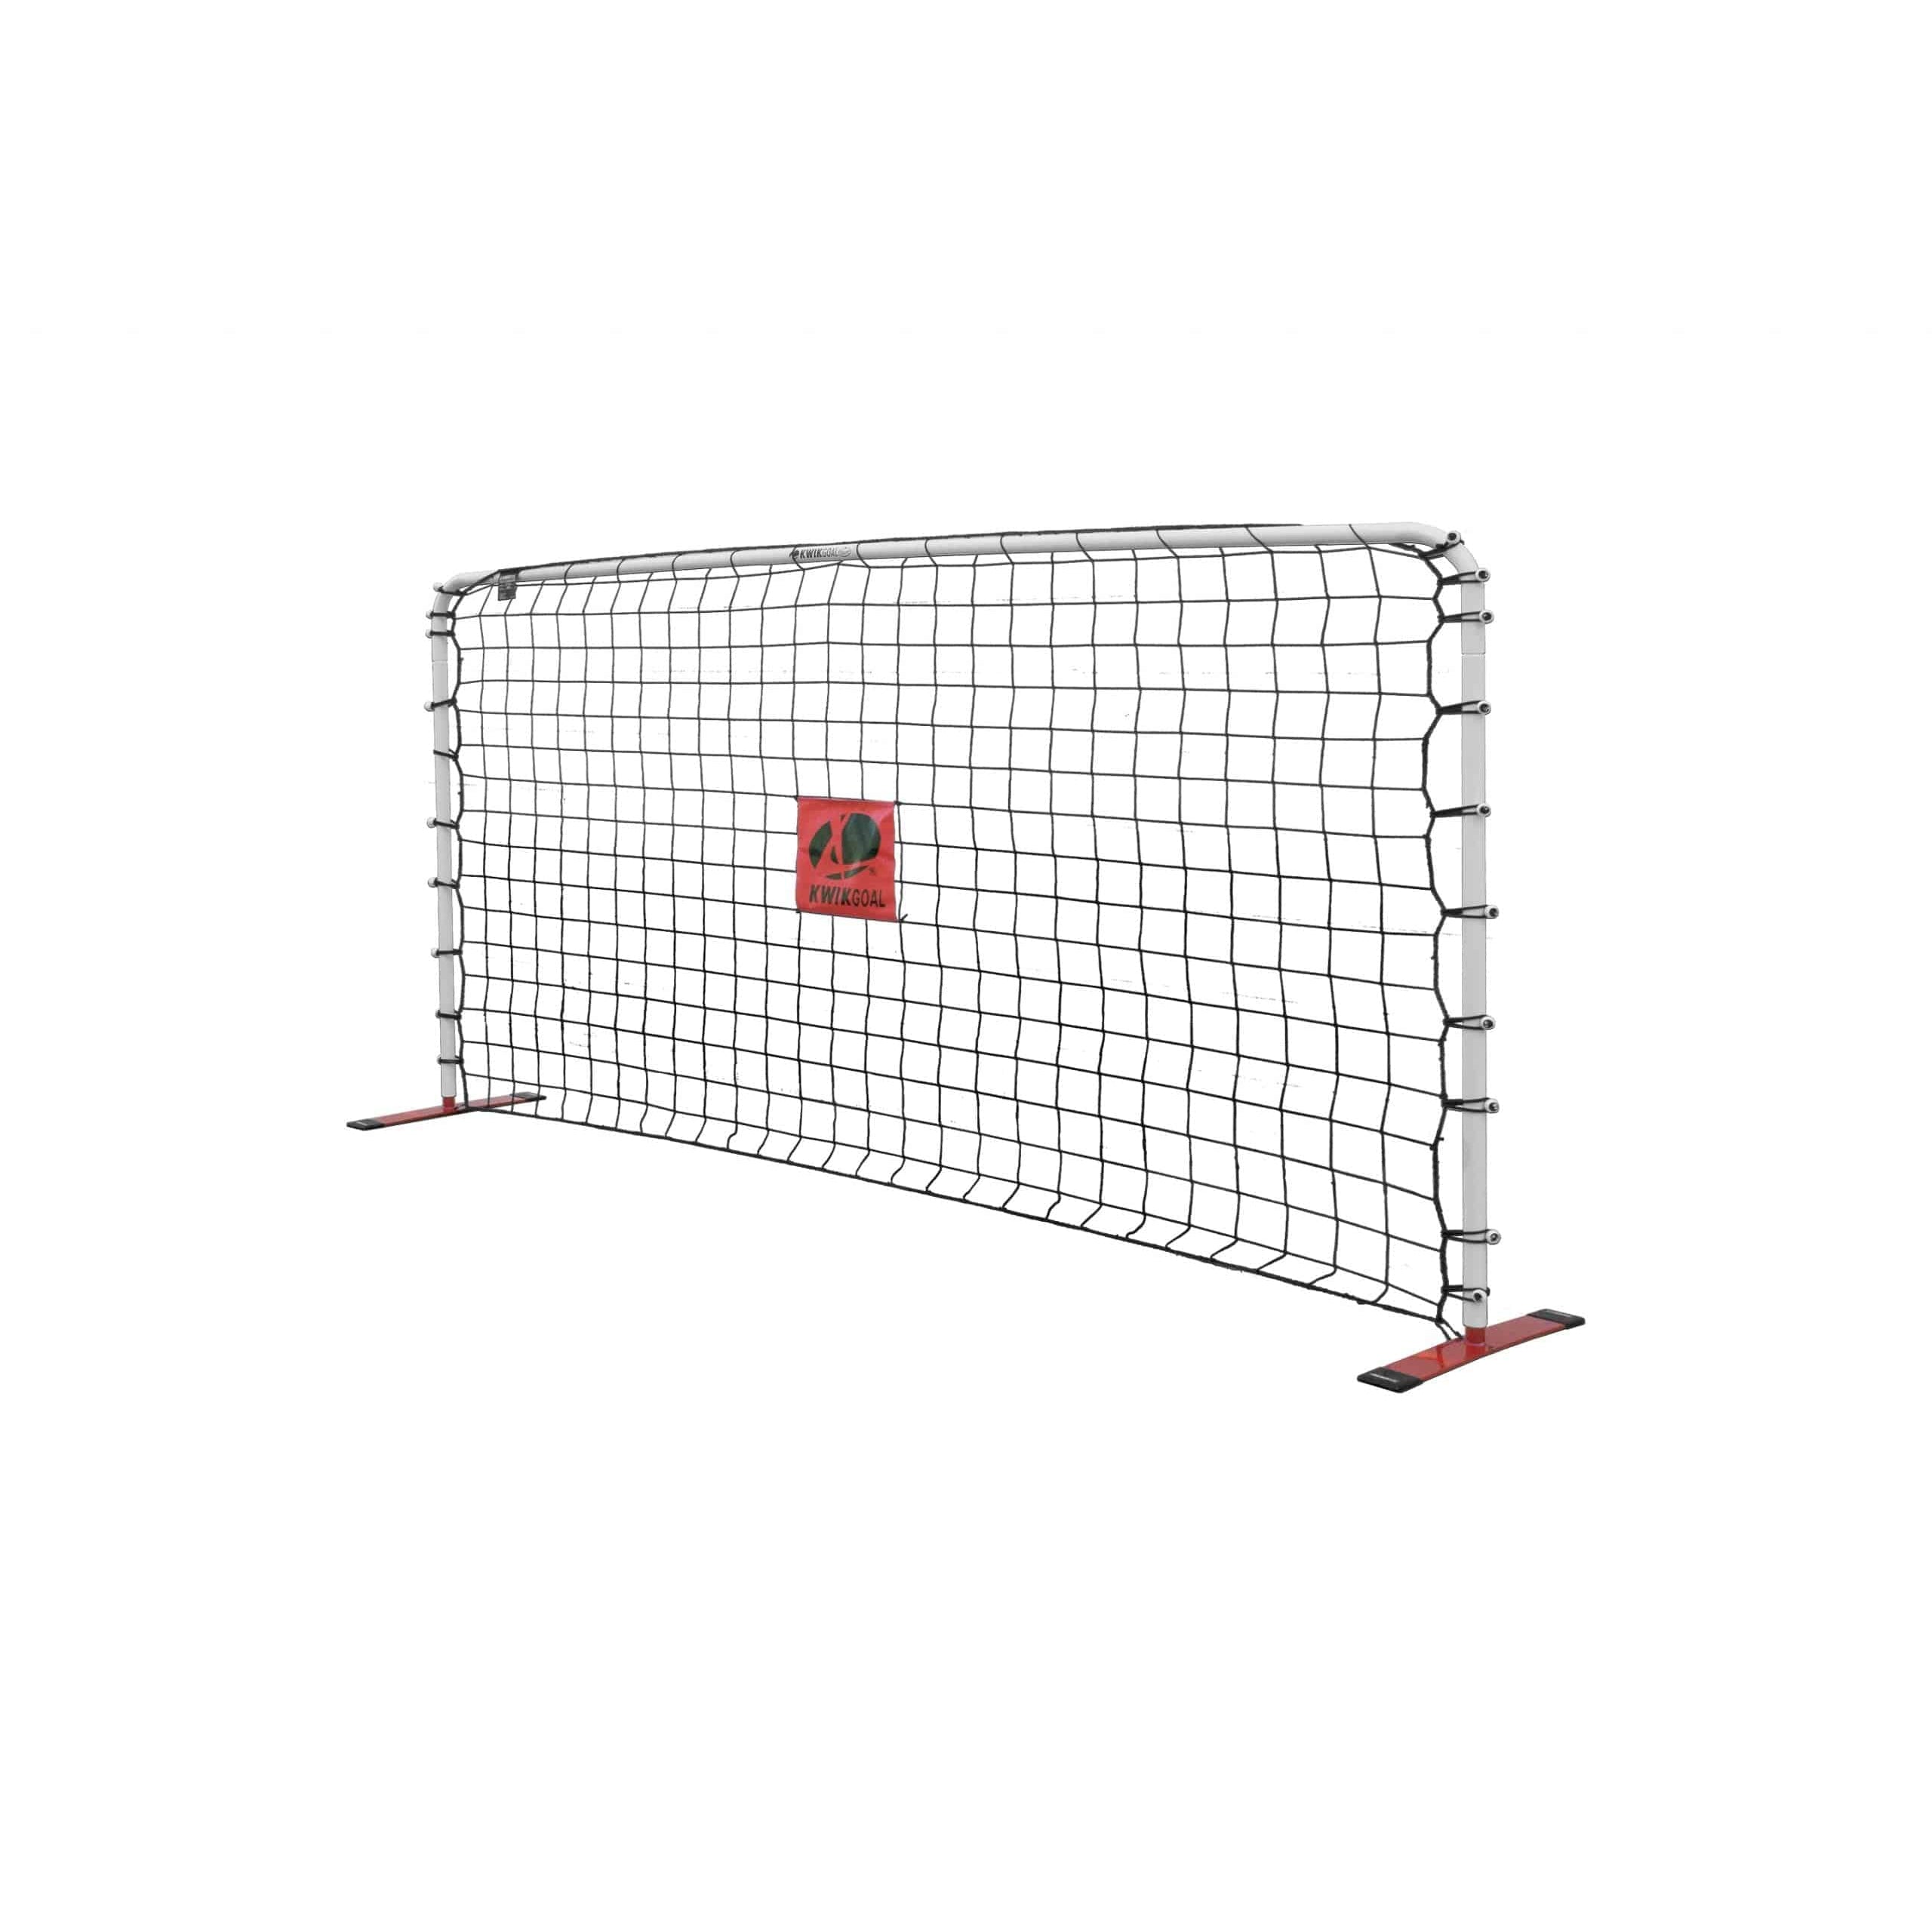 Kwik Goal AFR-2 Rebounder Replacement Net